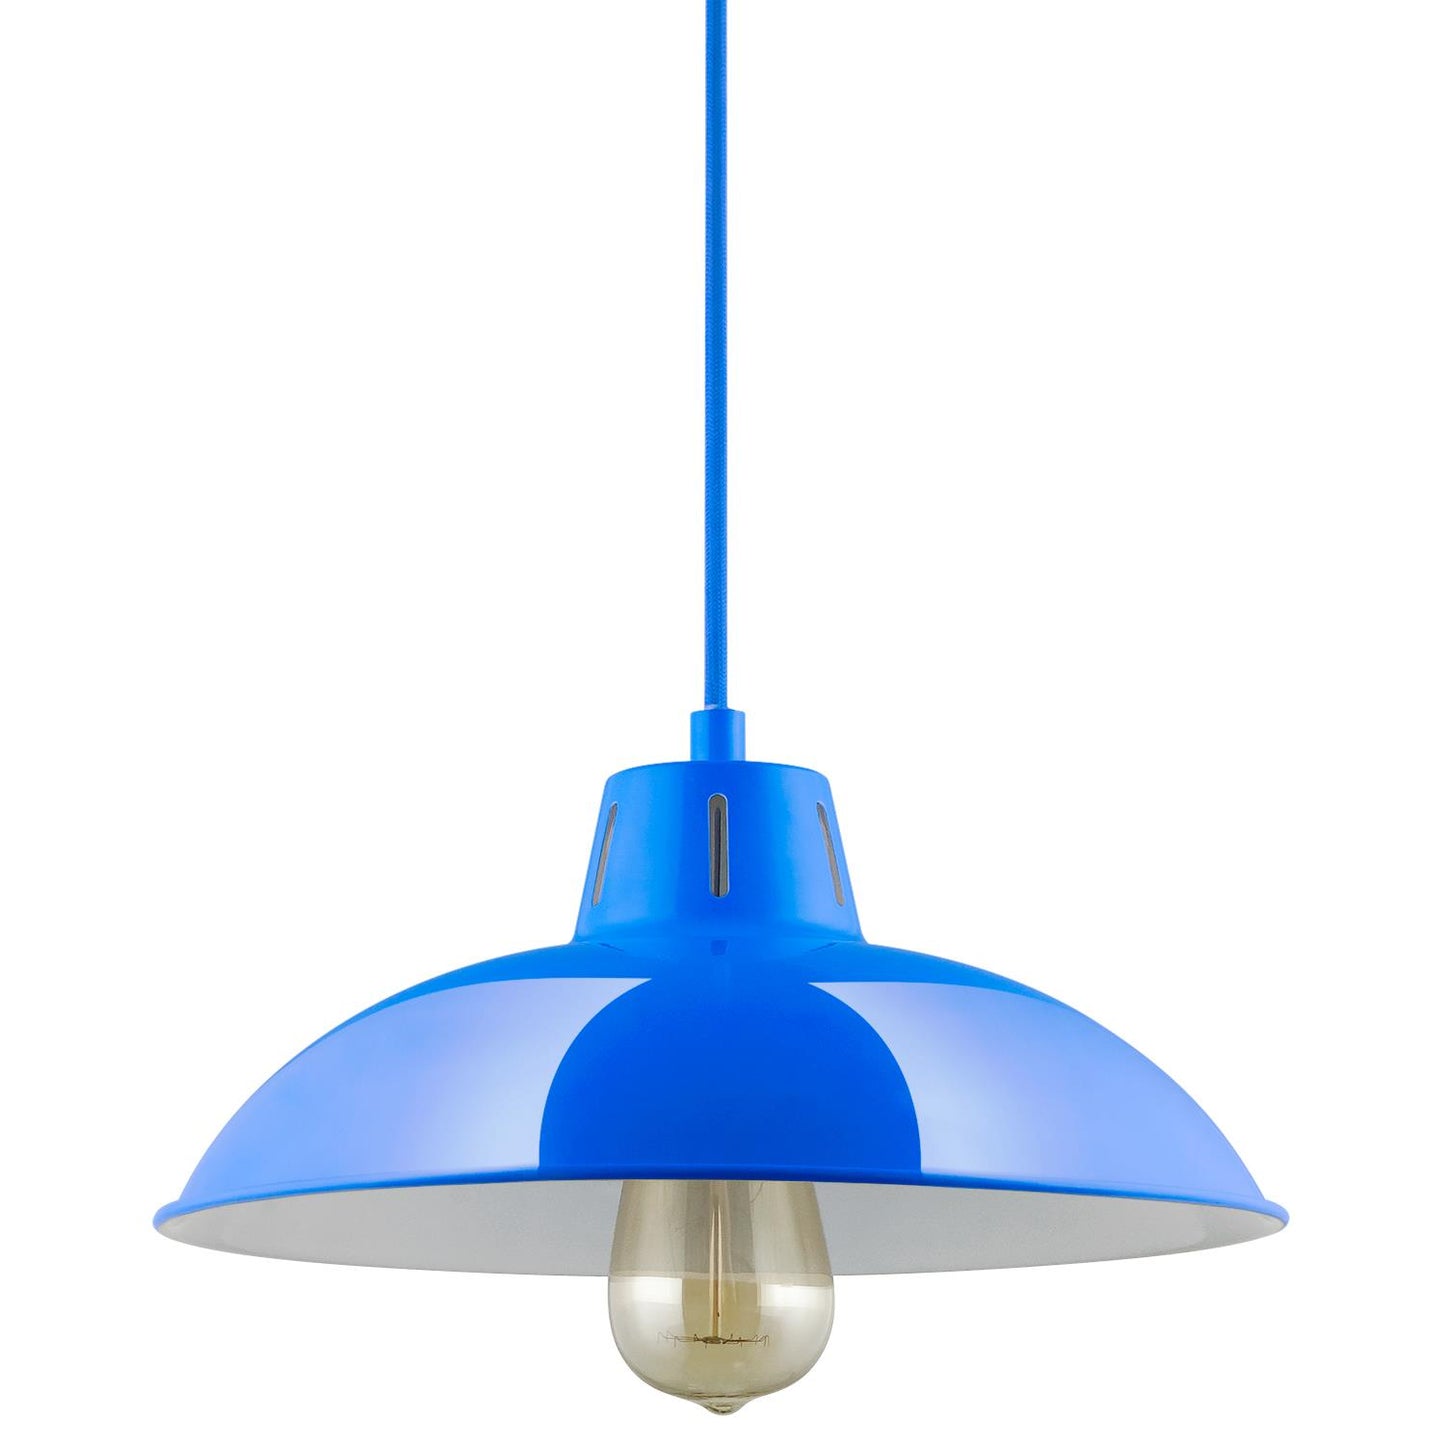 Sunlite CF/PD/V/B Blue Vega Residential Ceiling Pendant Light Fixtures With Medium (E26) Base